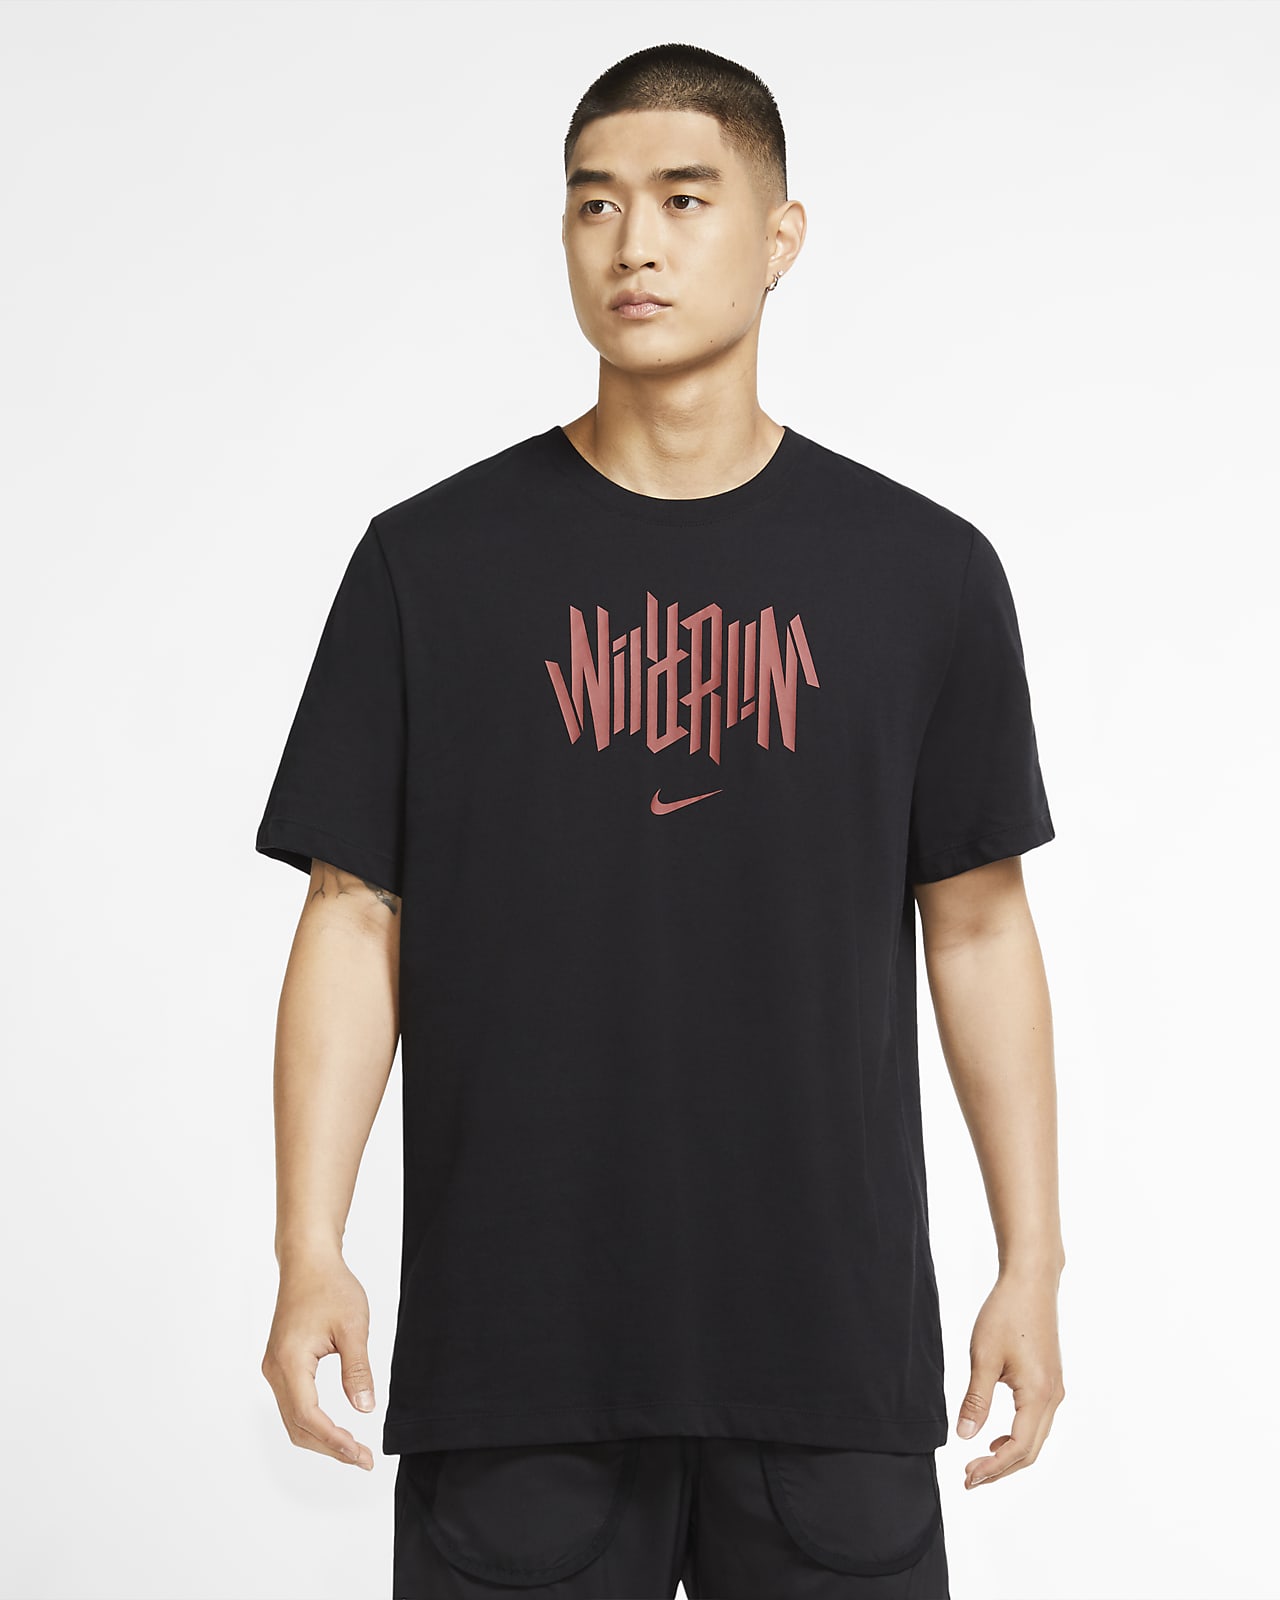 Nike公式 ナイキ Dri Fit ワイルド ラン メンズ ランニング Tシャツ オンラインストア 通販サイト